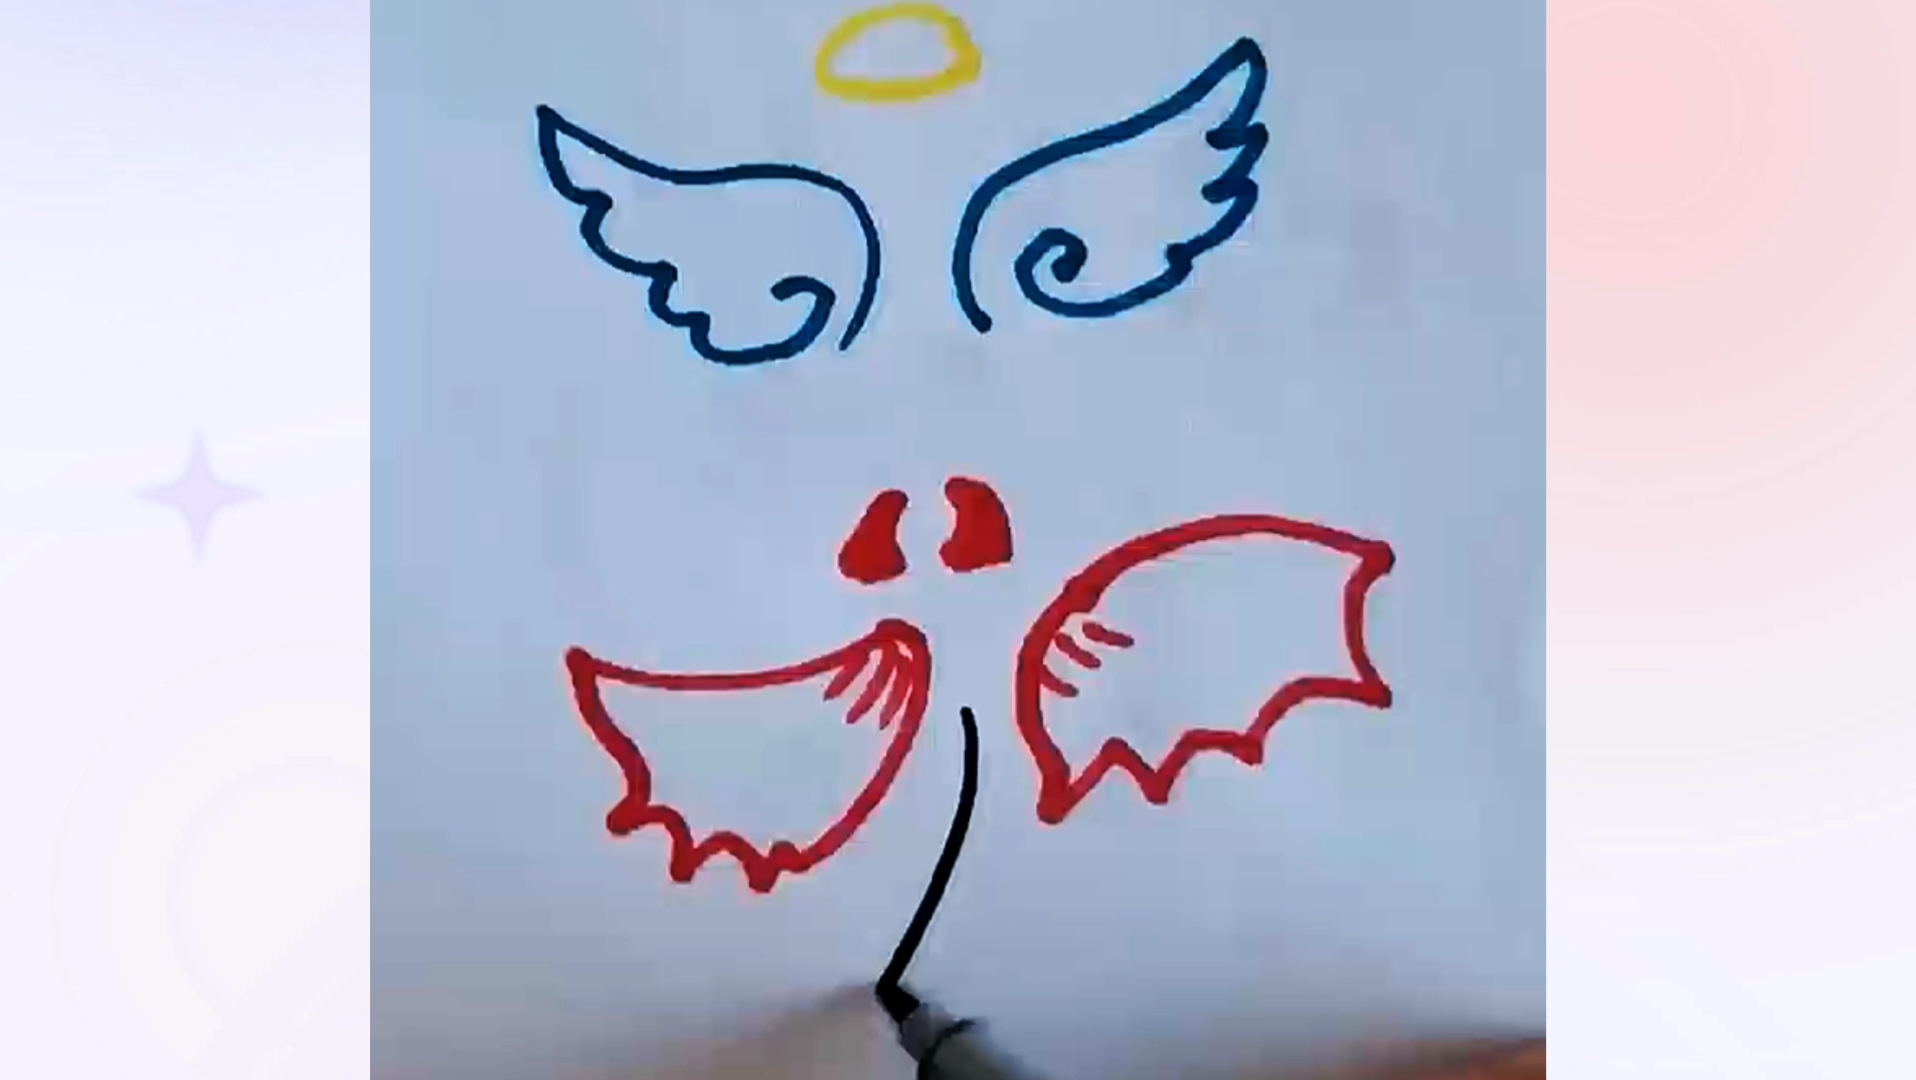 小天使和小恶魔简笔画图片